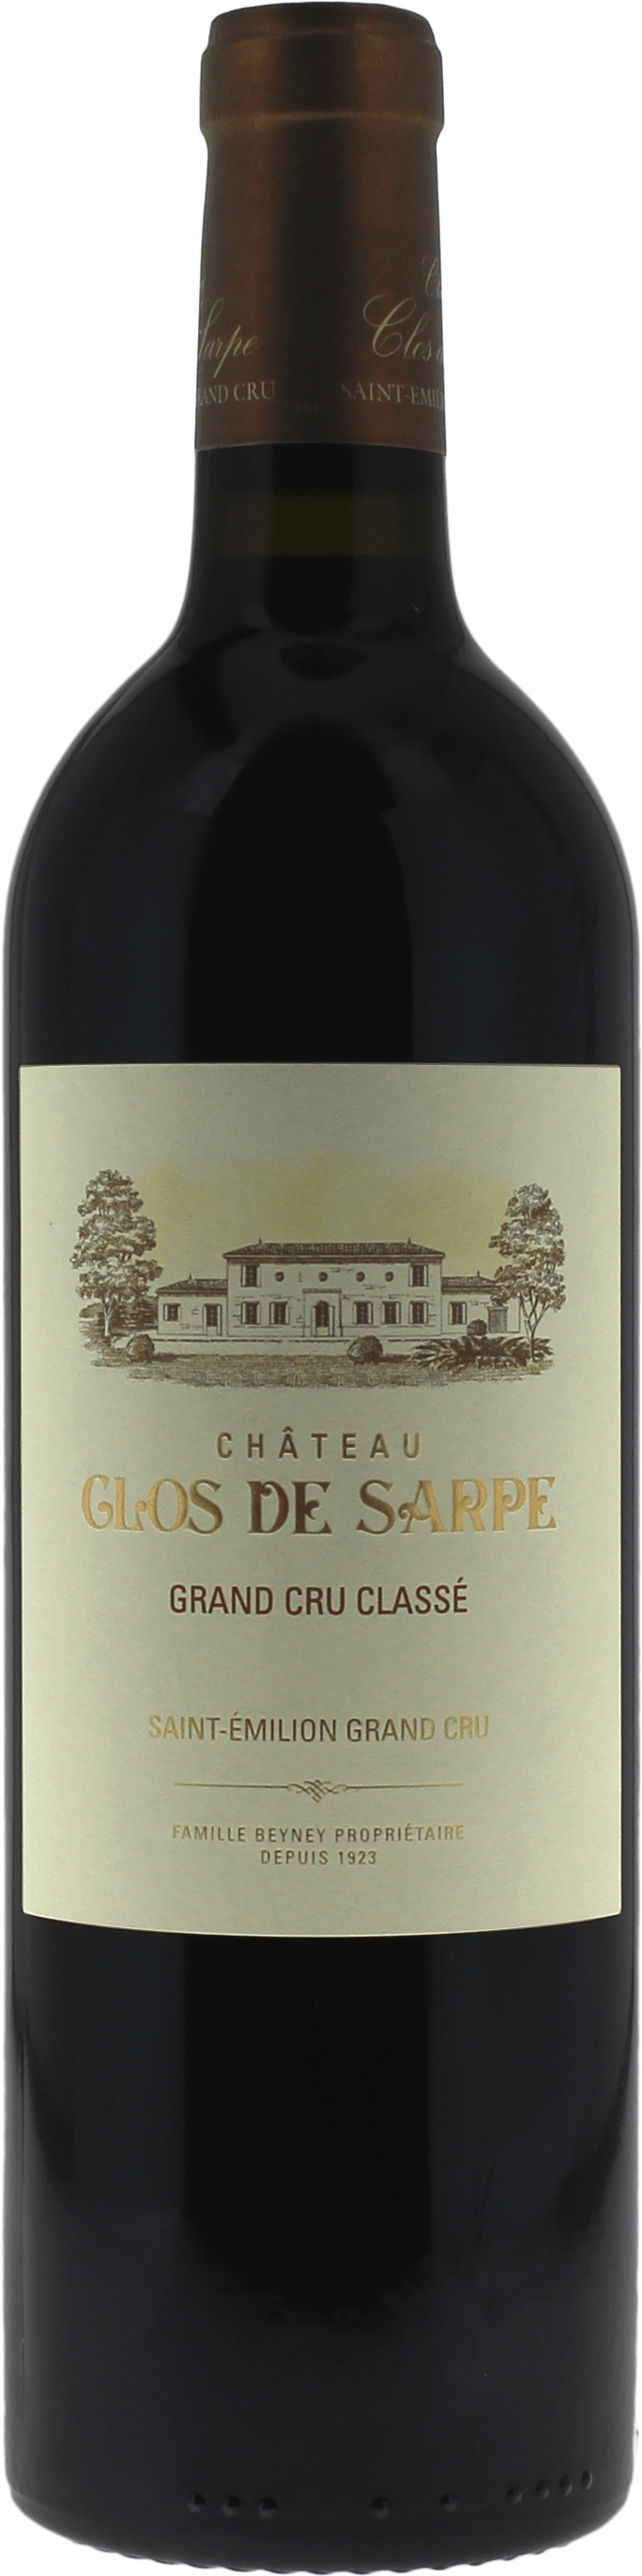 Clos de sarpe 1988 Grand Cru Class Saint-Emilion, Bordeaux rouge